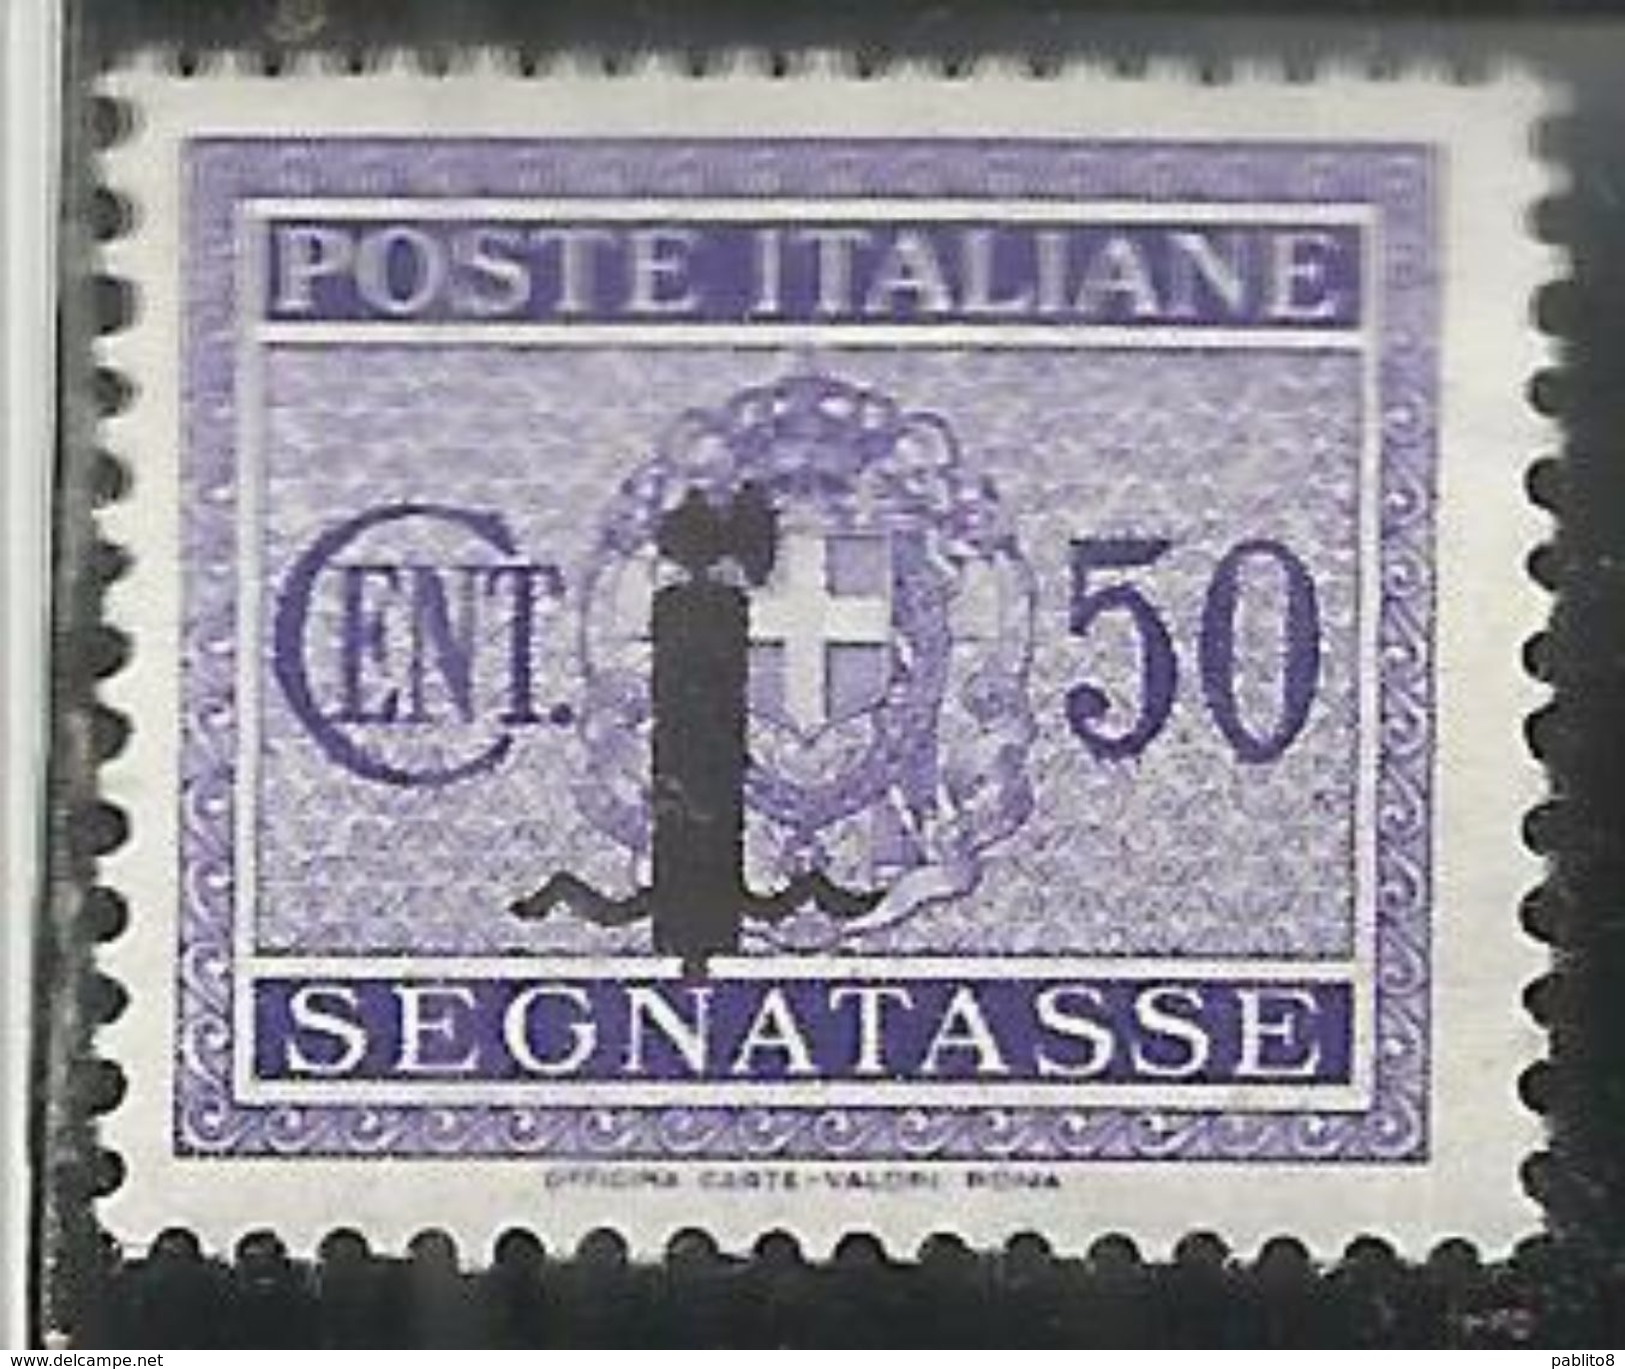 ITALIA REGNO REPUBBLICA SOCIALE RSI 1944 SEGNATASSE POSTAGE DUE PICCOLO FASCIO FASCIETTO CENT. 50 TASSE  MLH - Taxe